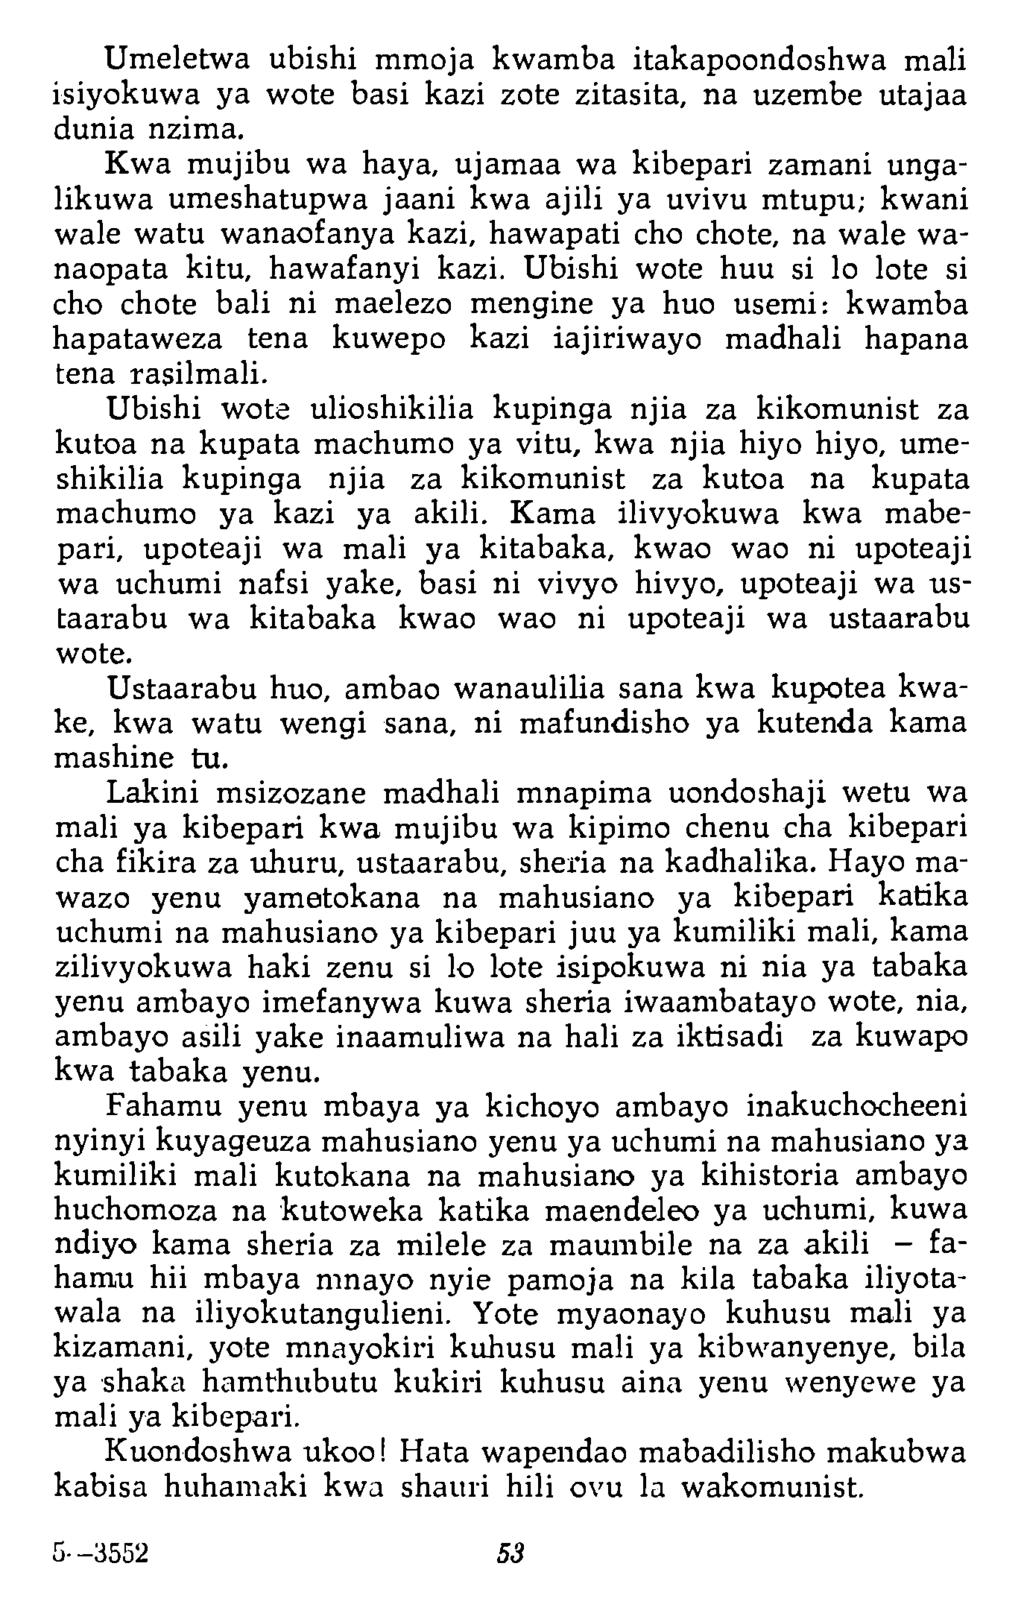 Umeletwa ubishi mmoja kwamba itakapoondoshwa mali isiyokuwa у a wote basi kazi zote zitasita, na uzembe utajaa dunia nzima.